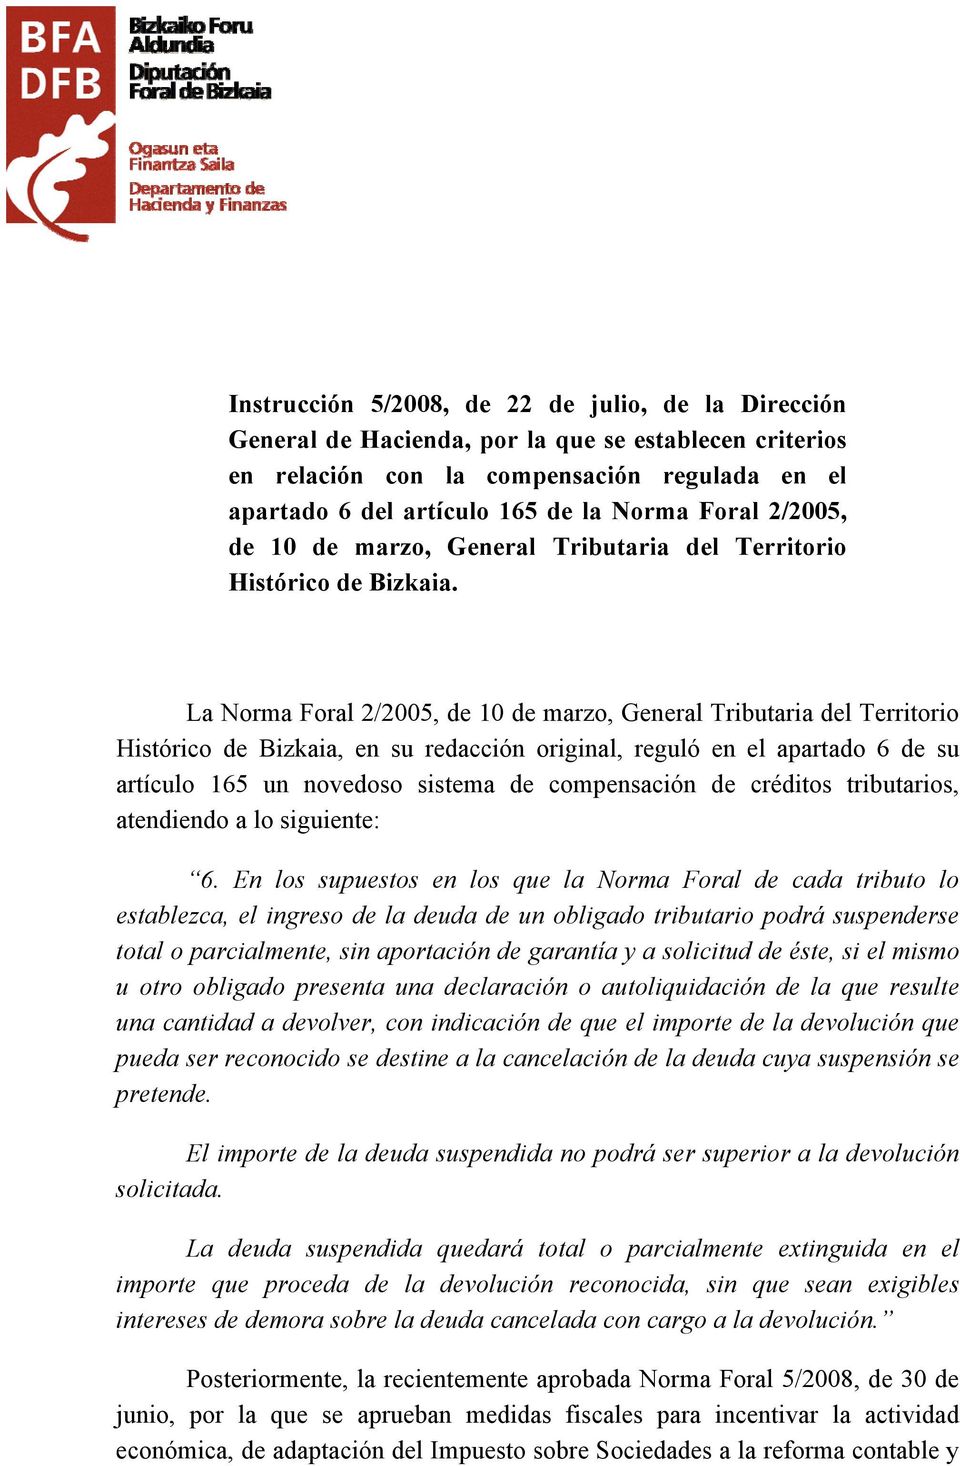 La Norma Foral 2/2005, de 10 de marzo, General Tributaria del Territorio Histórico de Bizkaia, en su redacción original, reguló en el apartado 6 de su artículo 165 un novedoso sistema de compensación